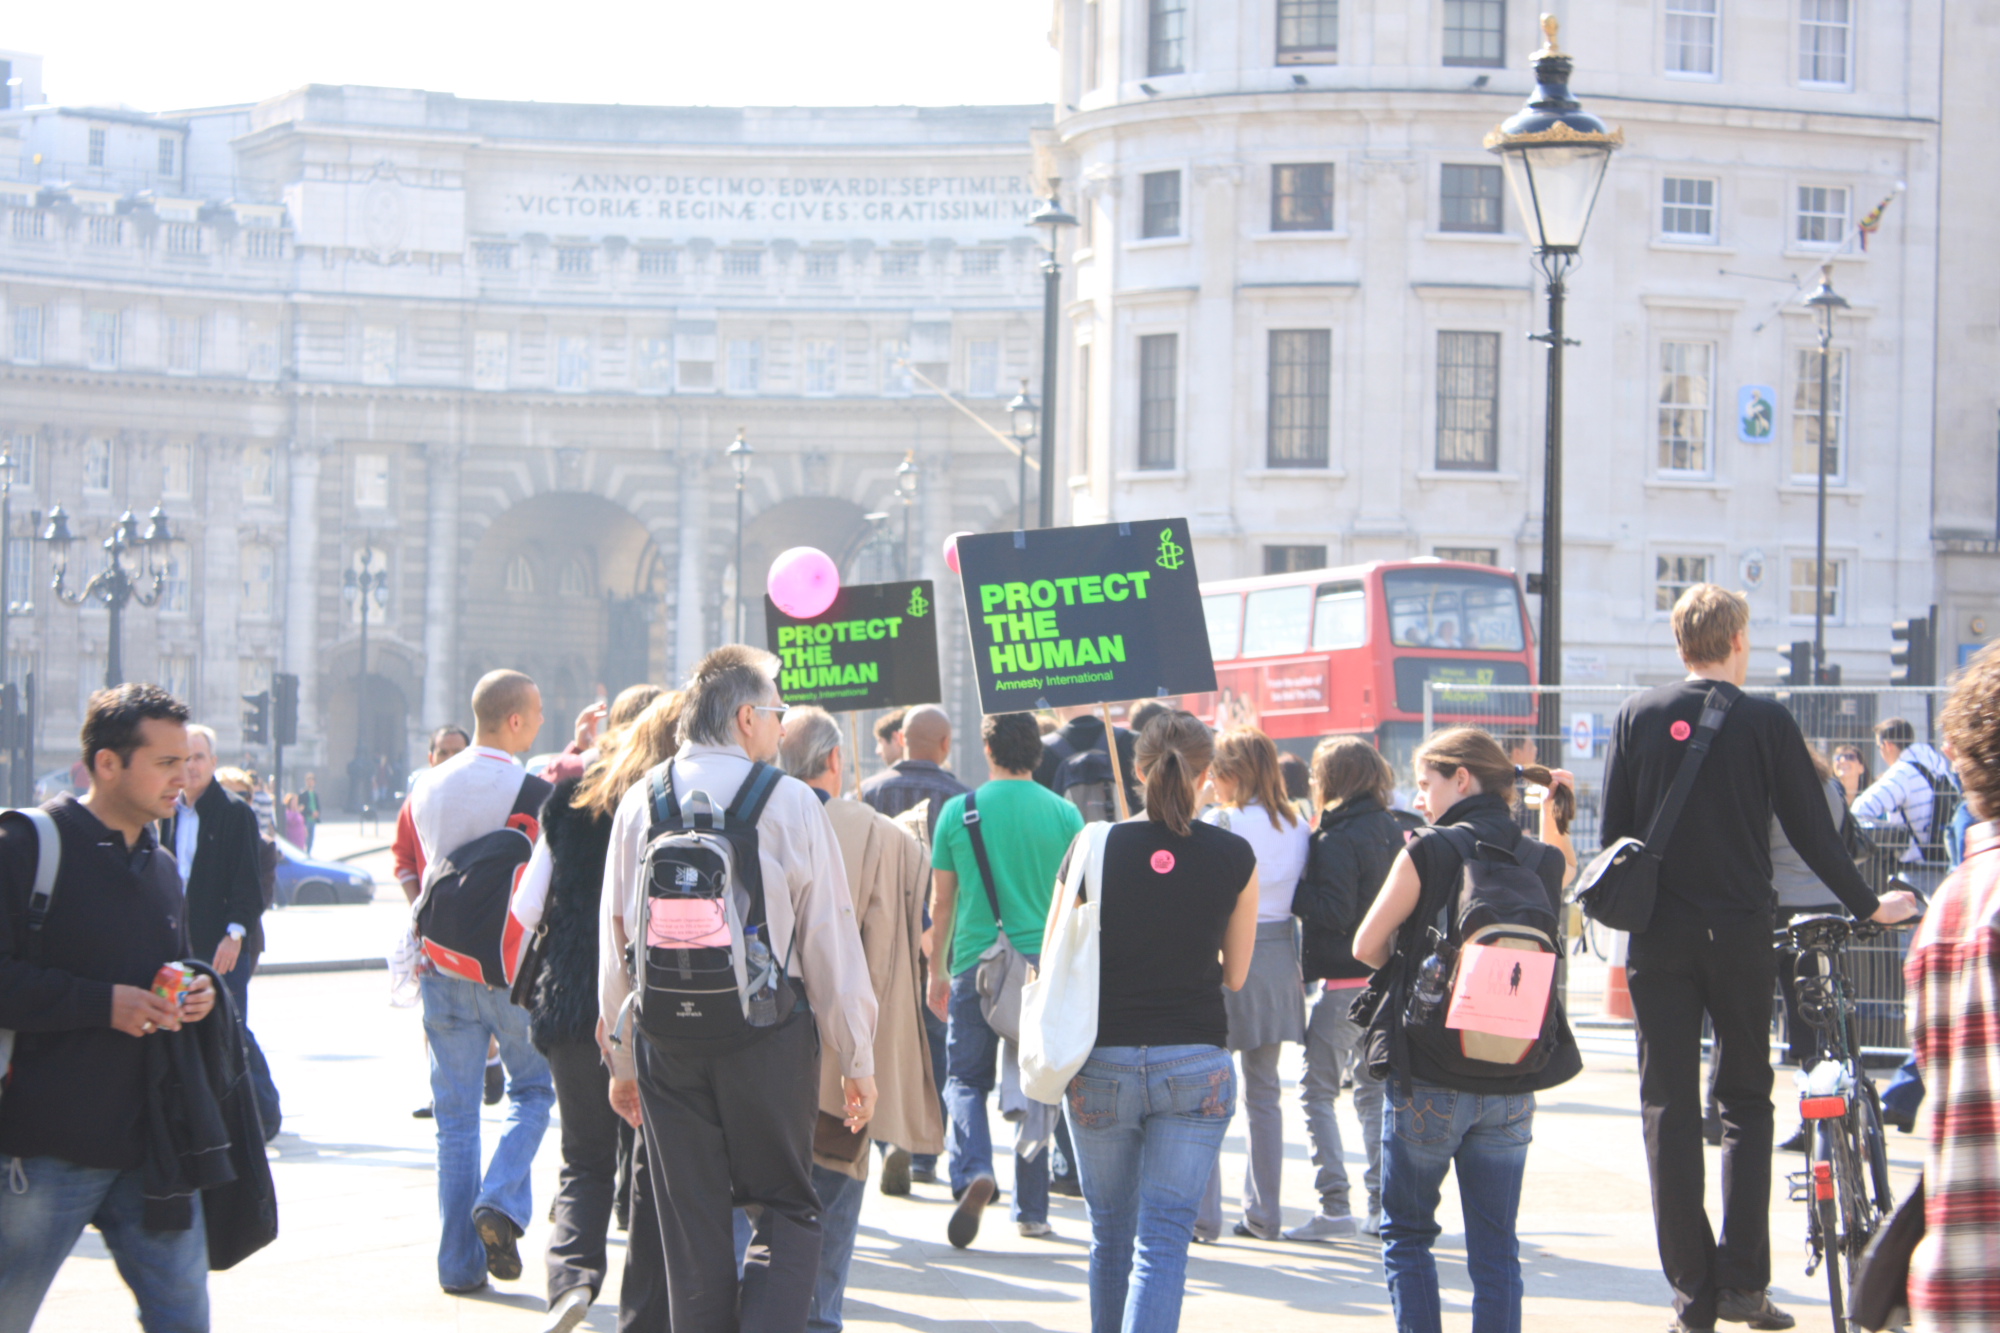 Protesters in Trafalgar Square